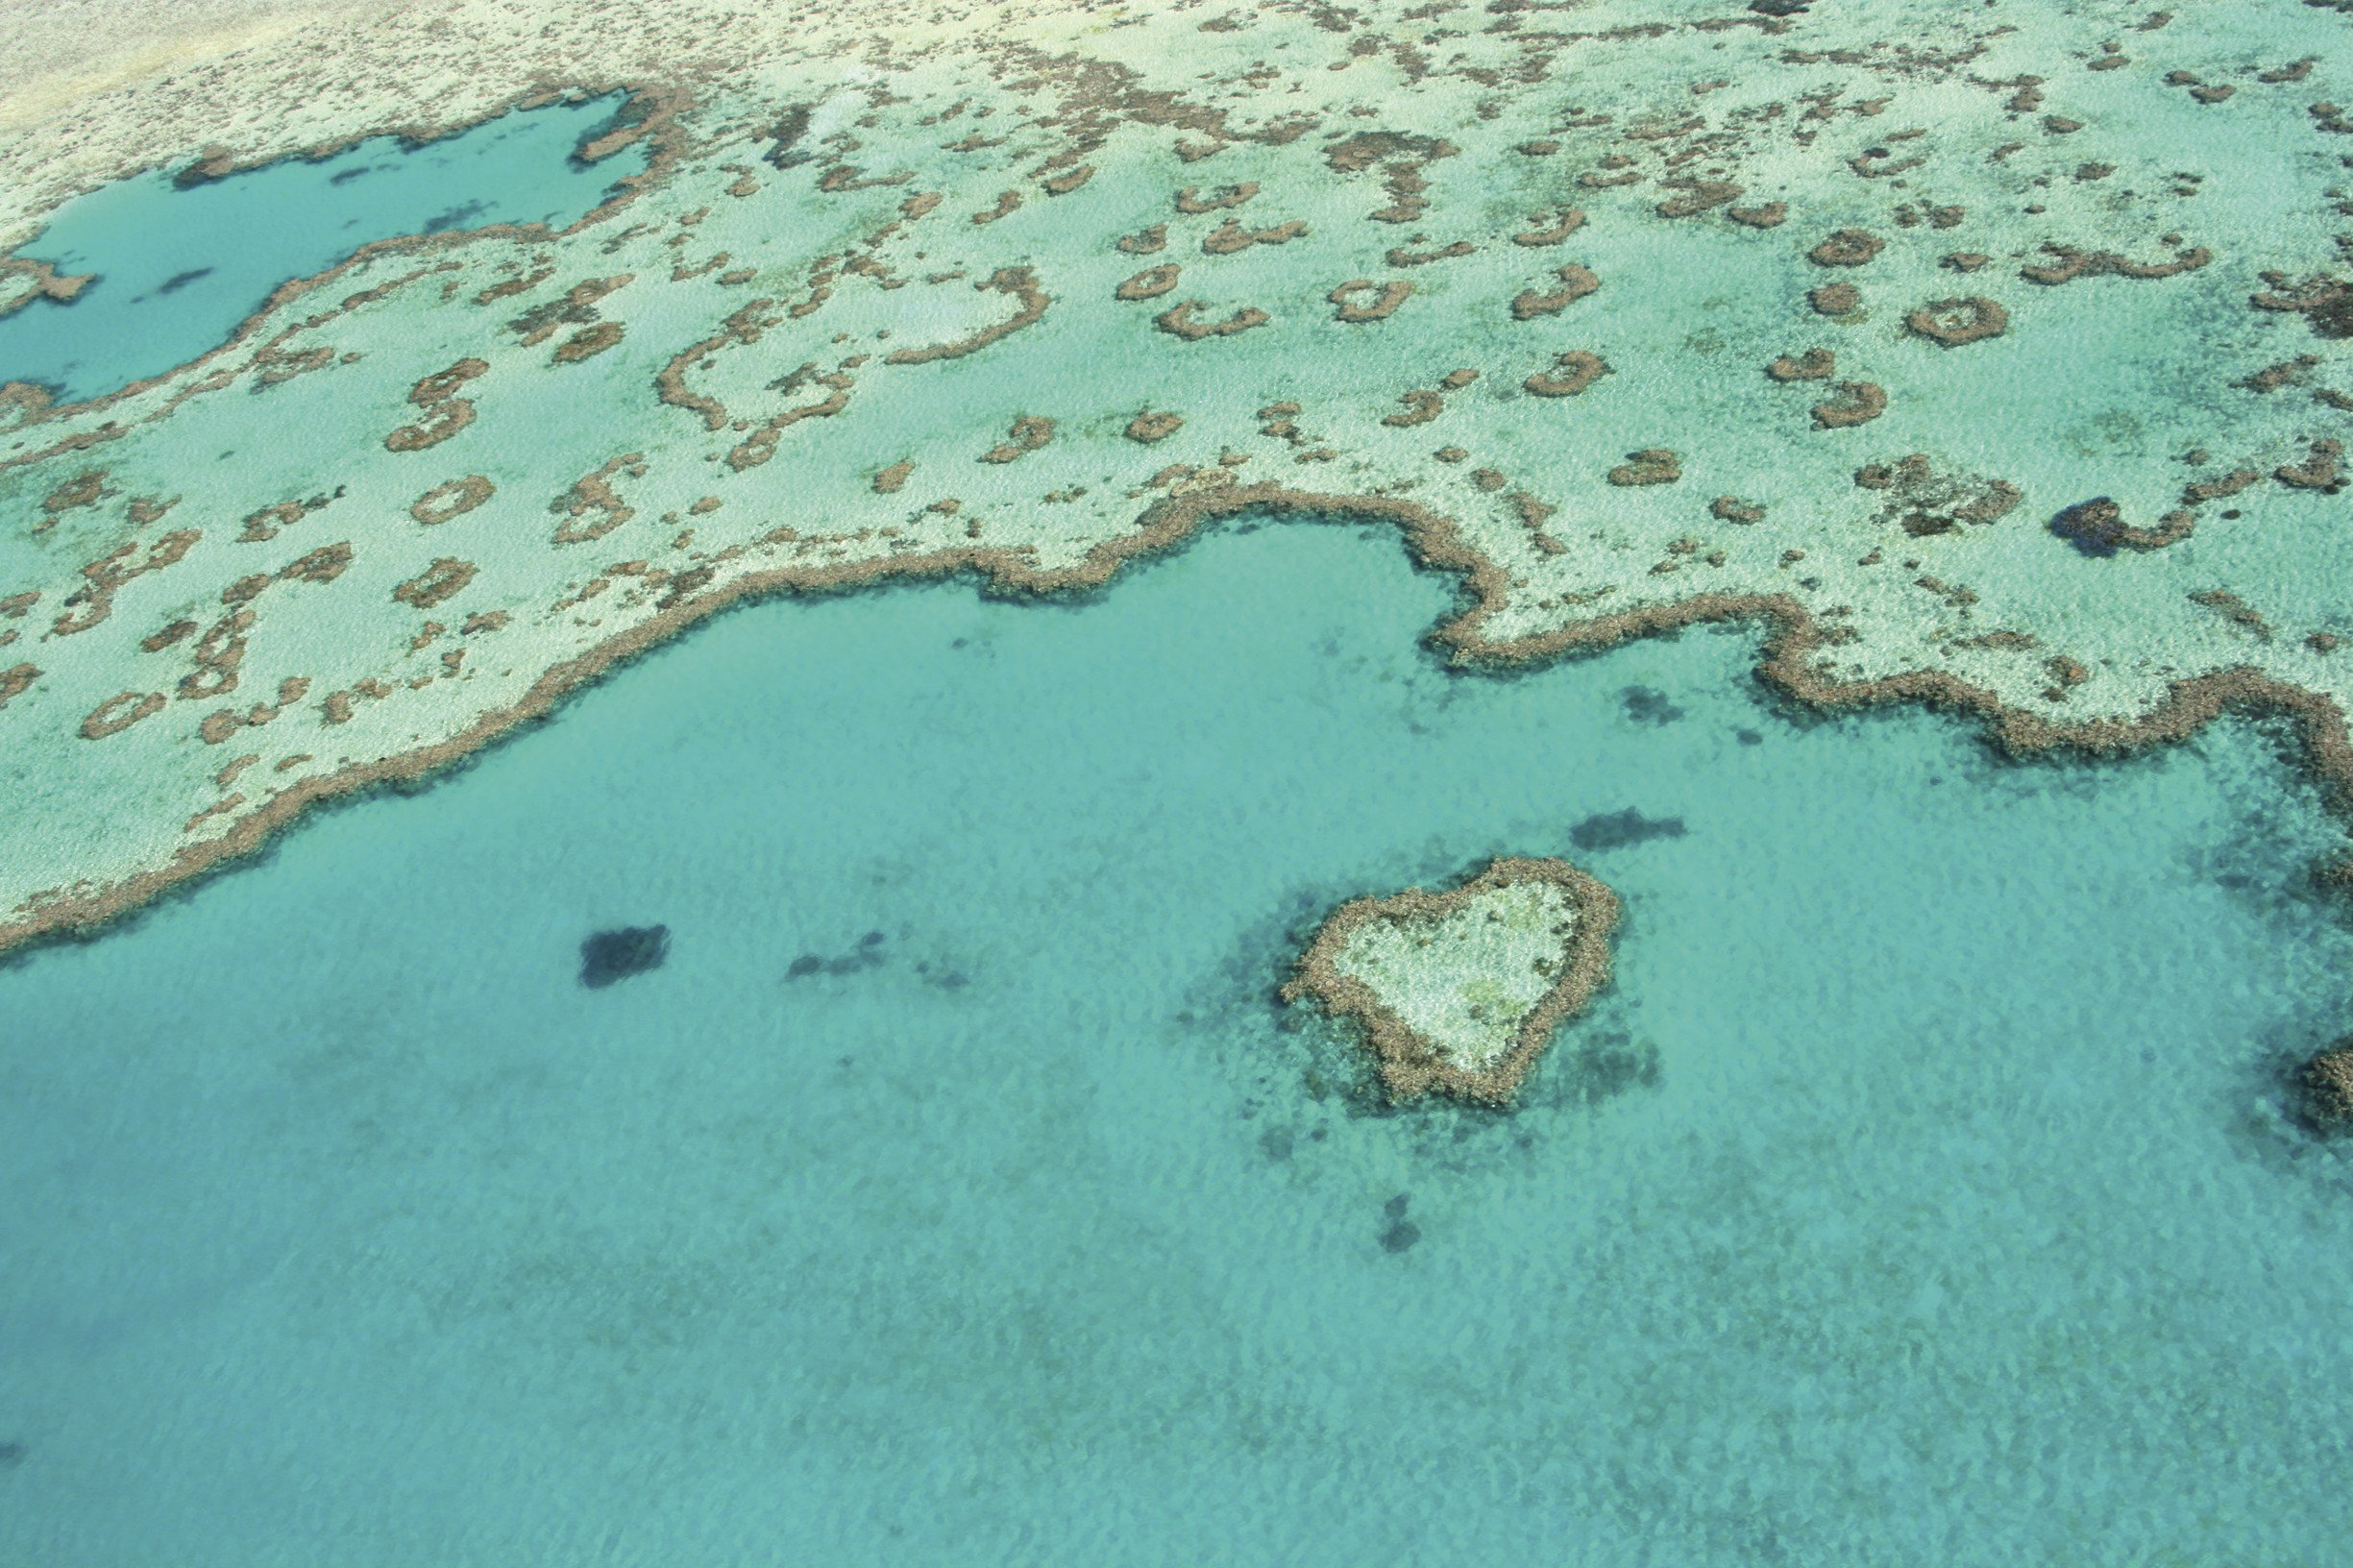 Great Barrier Reef, Australien